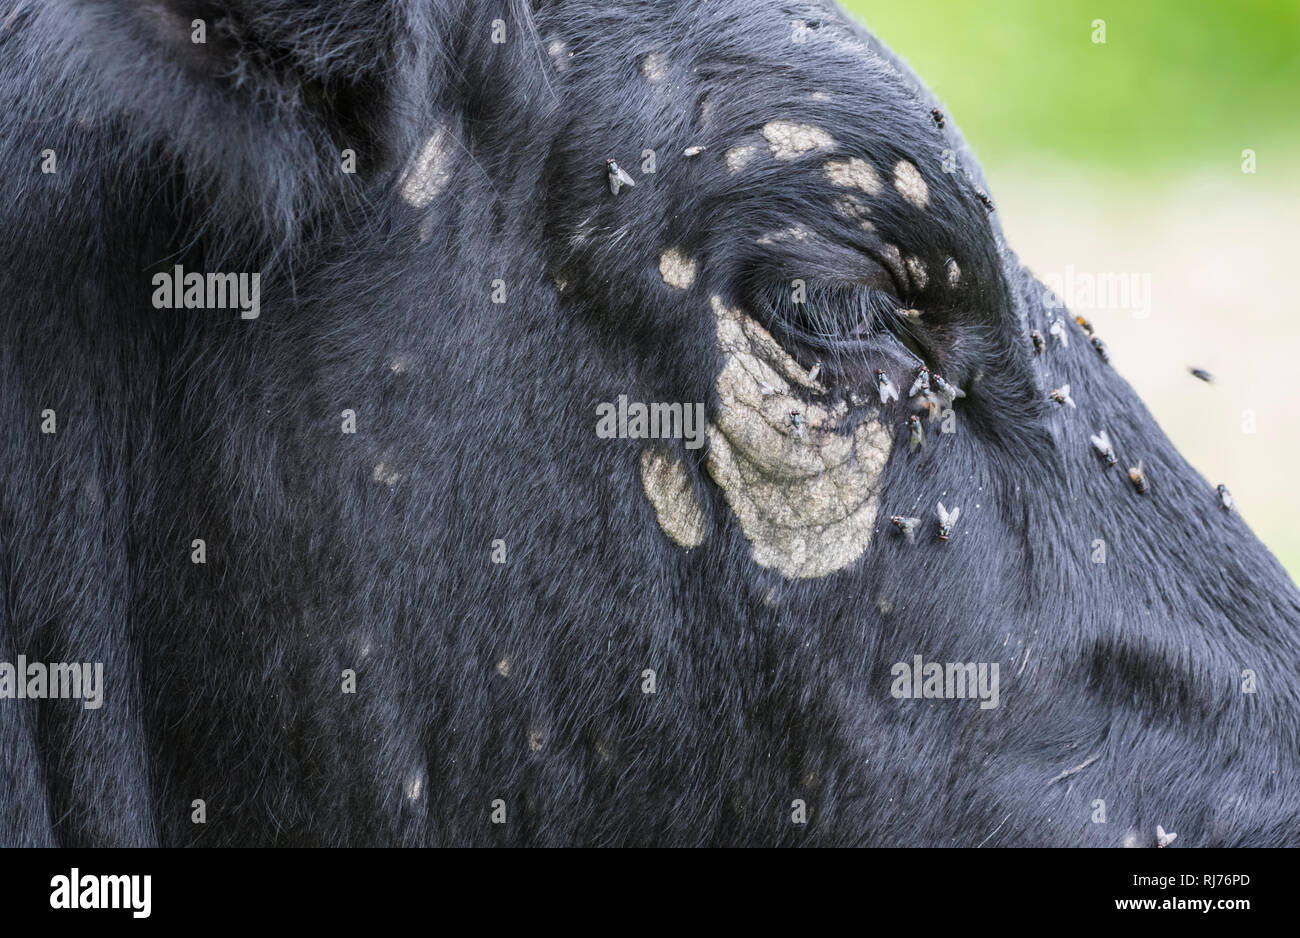 Fliegt auf und rund um das Auge eine schwarze Kuh, mit Verfärbungen und weiße Flecken um die Augen. Stockfoto